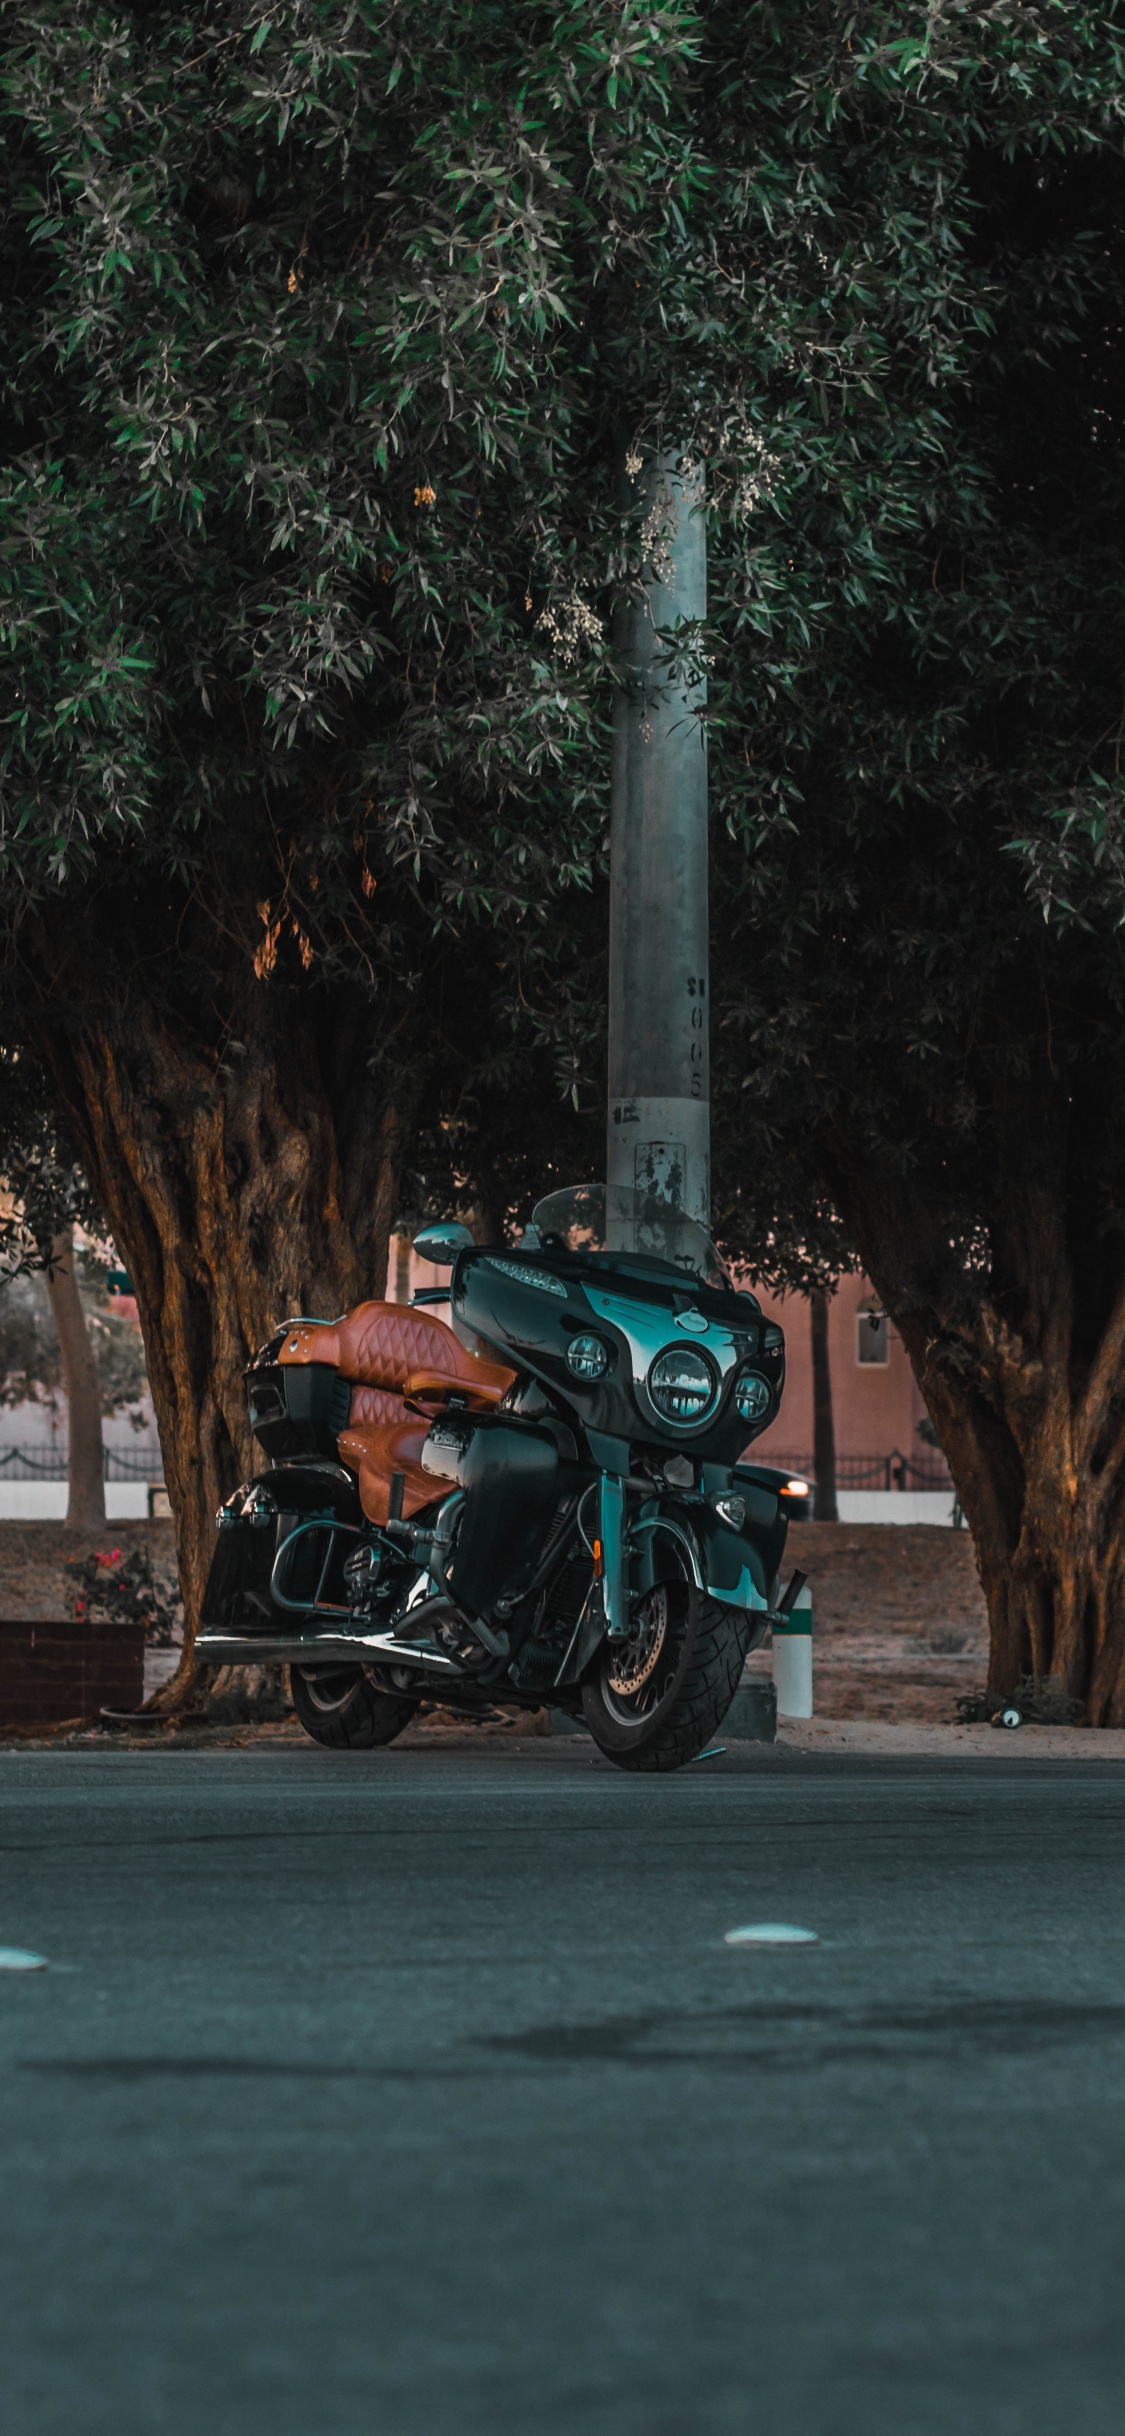 Motocicleta Verde y Negra Estacionada en la Carretera de Hormigón Gris Durante el Día. Wallpaper in 1125x2436 Resolution